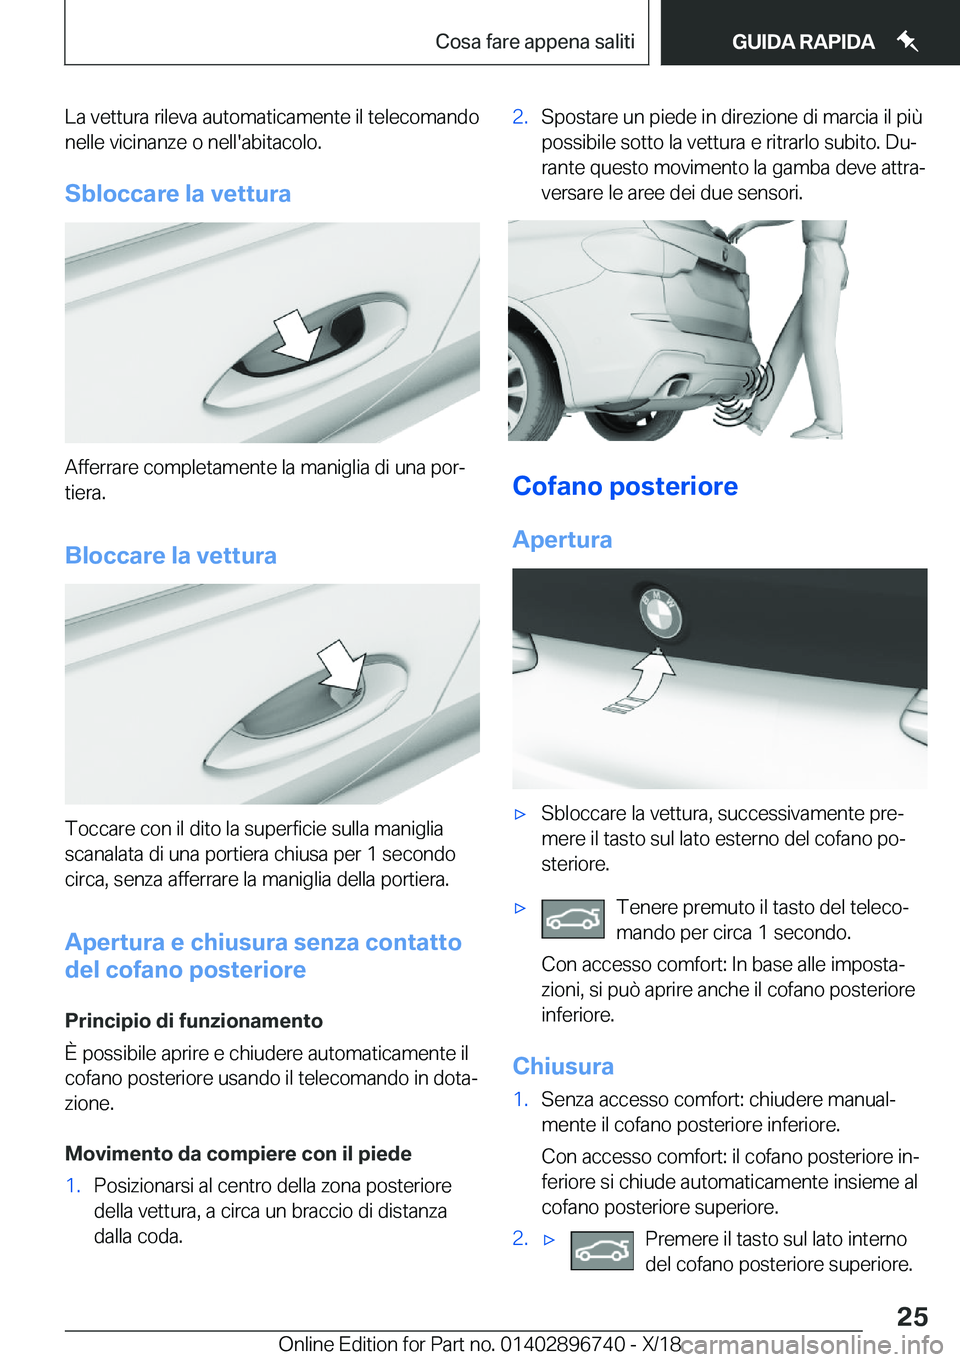 BMW X5 2019  Libretti Di Uso E manutenzione (in Italian) �L�a��v�e�t�t�u�r�a��r�i�l�e�v�a��a�u�t�o�m�a�t�i�c�a�m�e�n�t�e��i�l��t�e�l�e�c�o�m�a�n�d�o�n�e�l�l�e��v�i�c�i�n�a�n�z�e��o��n�e�l�l�'�a�b�i�t�a�c�o�l�o�.
�S�b�l�o�c�c�a�r�e��l�a��v�e�t�